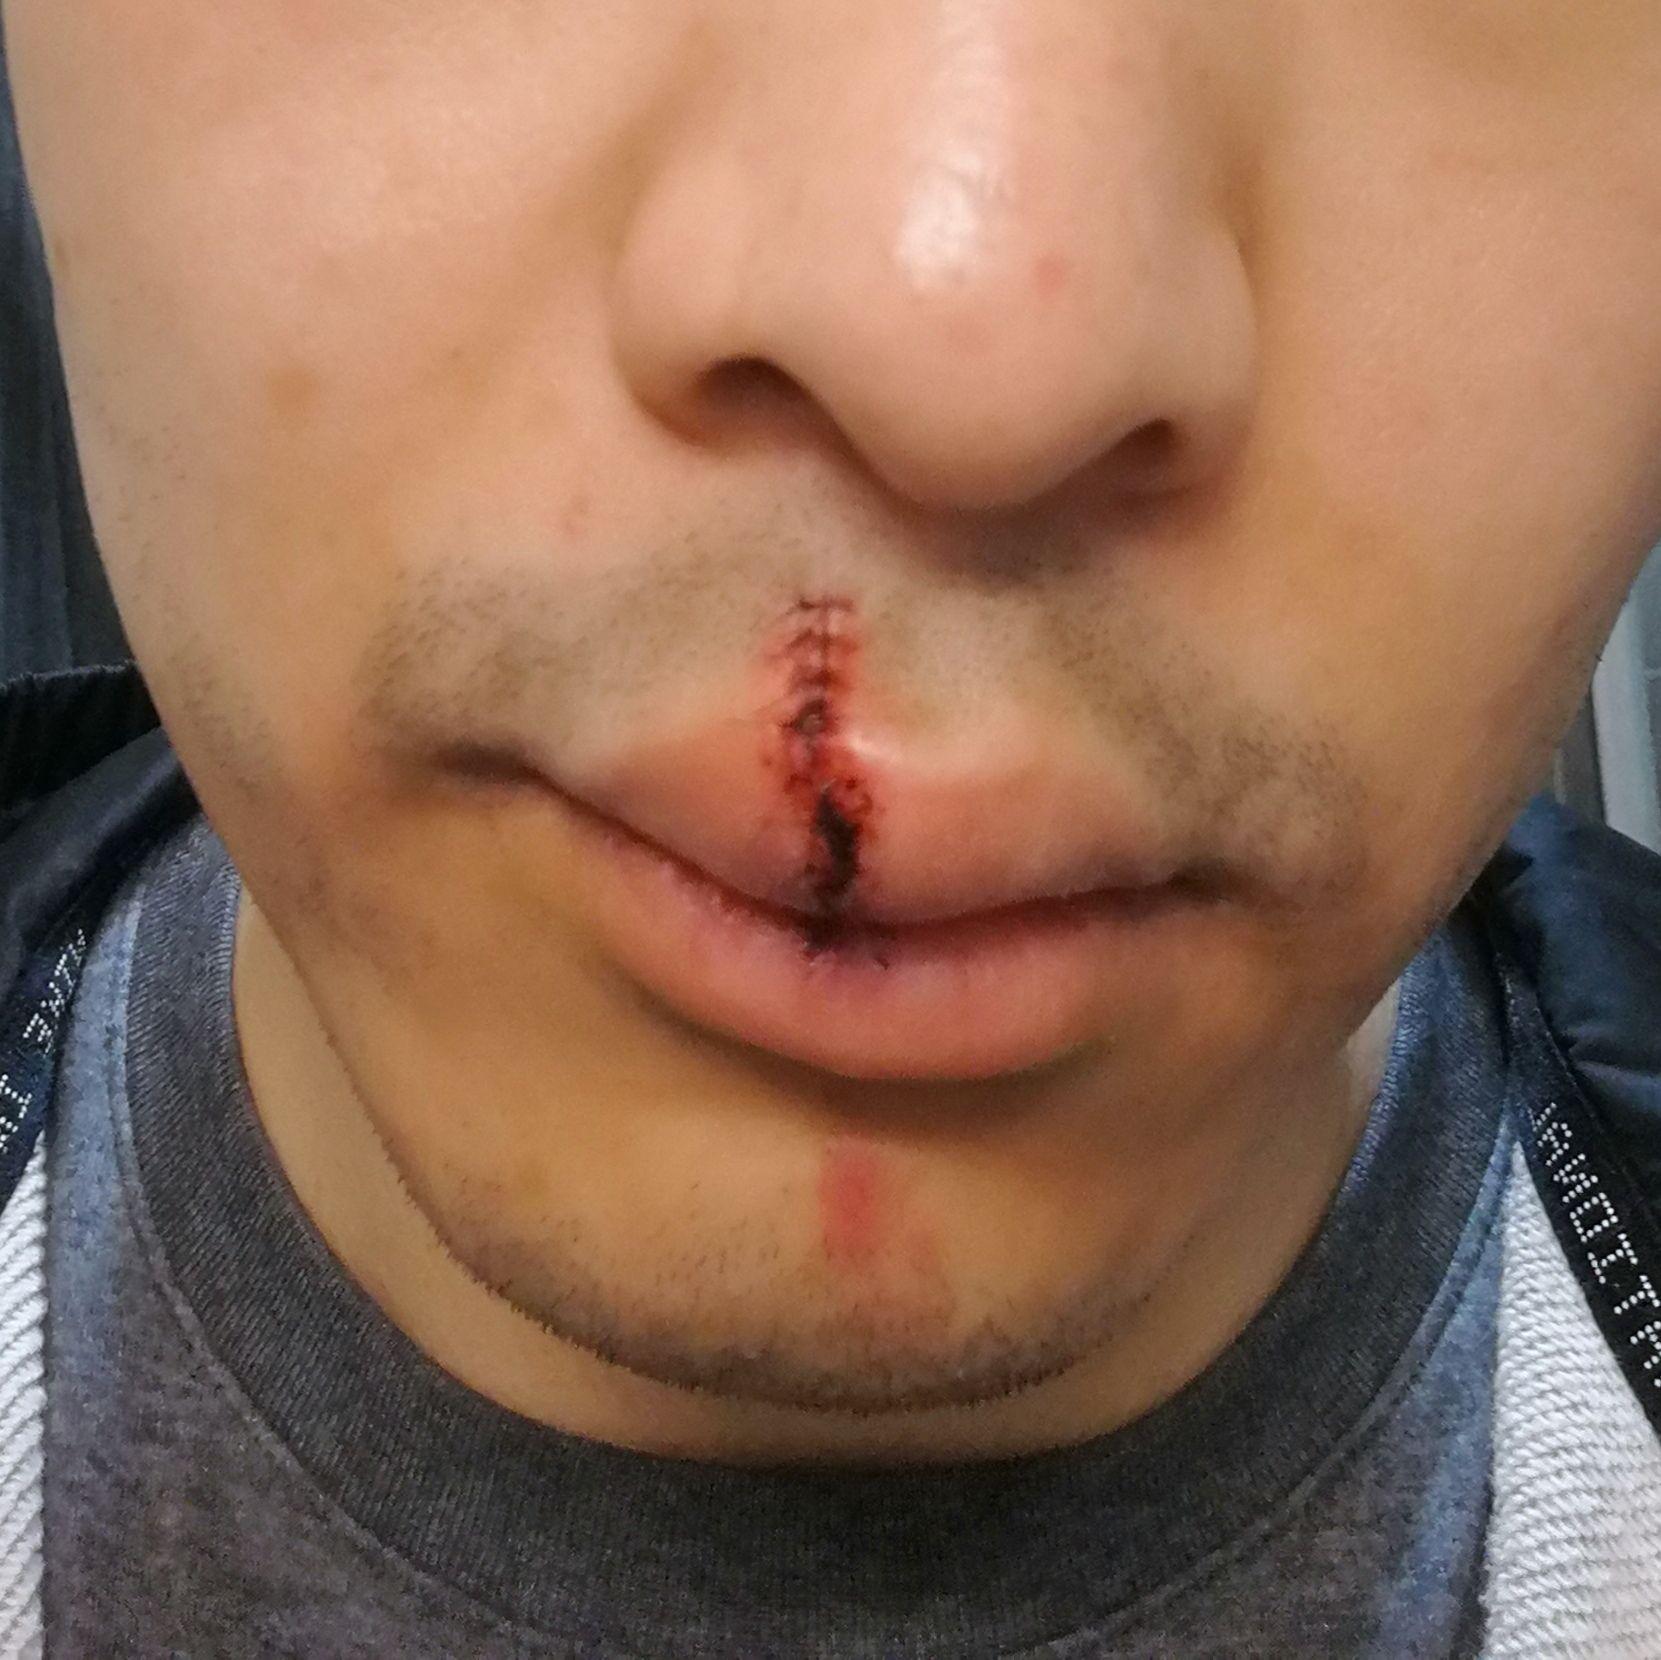 嘴唇缝针伤疤应该多久去医院修复? 